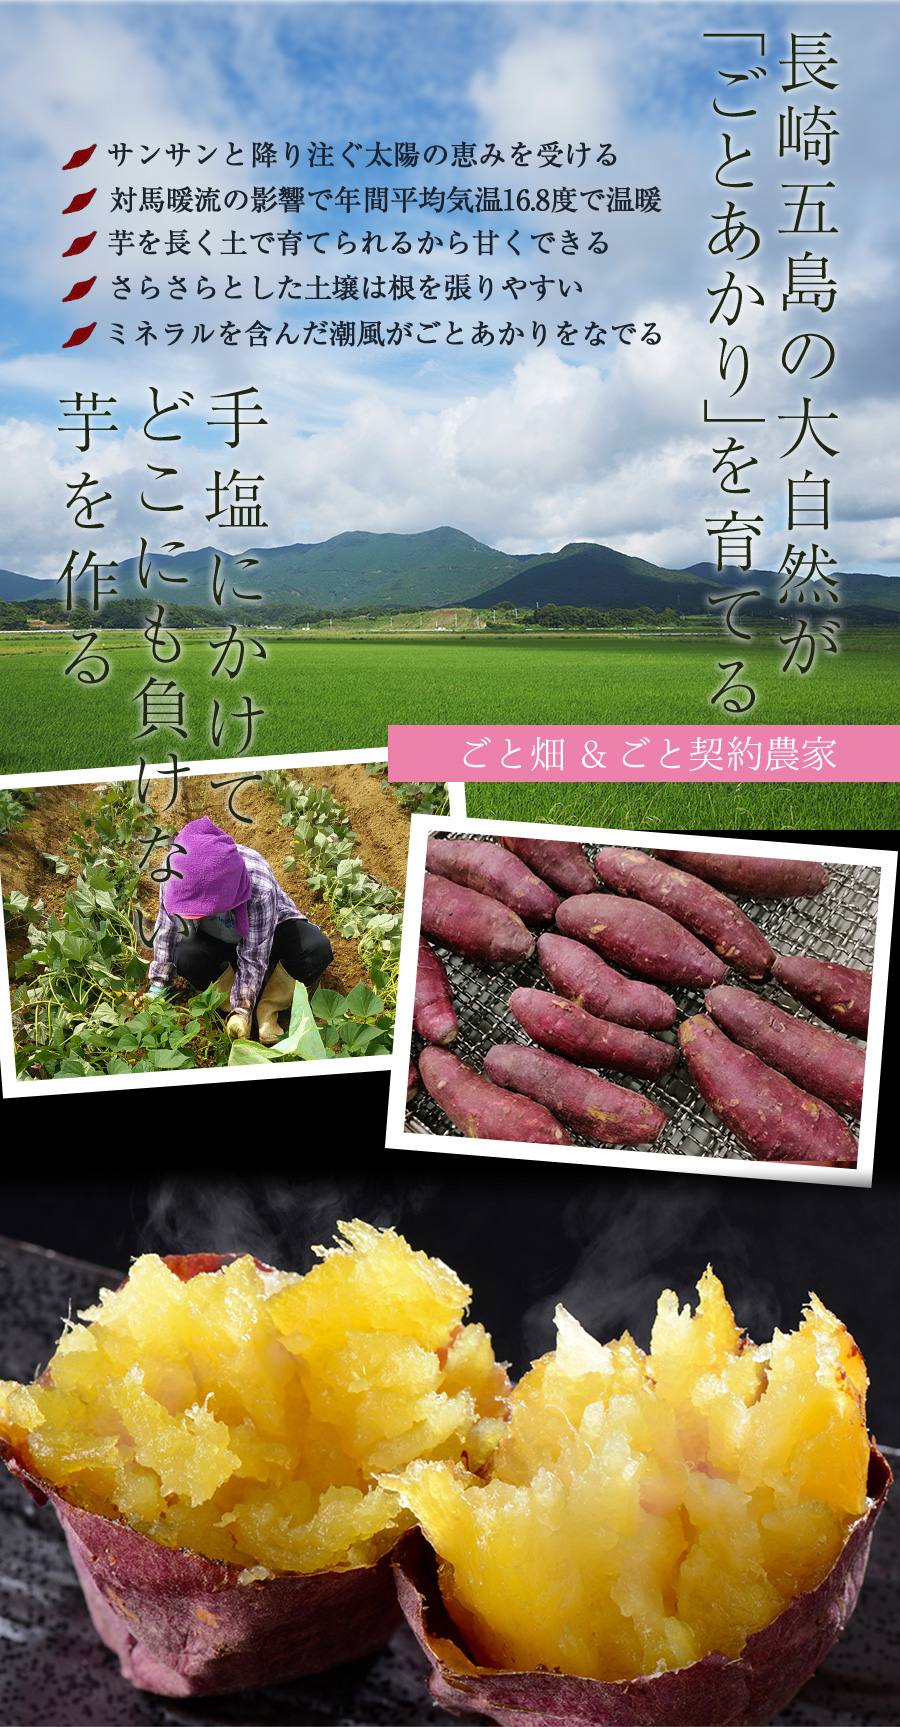 茨城 甘藷農園 鹿吉 芋師がつくる焼き芋 芋菱 6袋 ギフト対応可